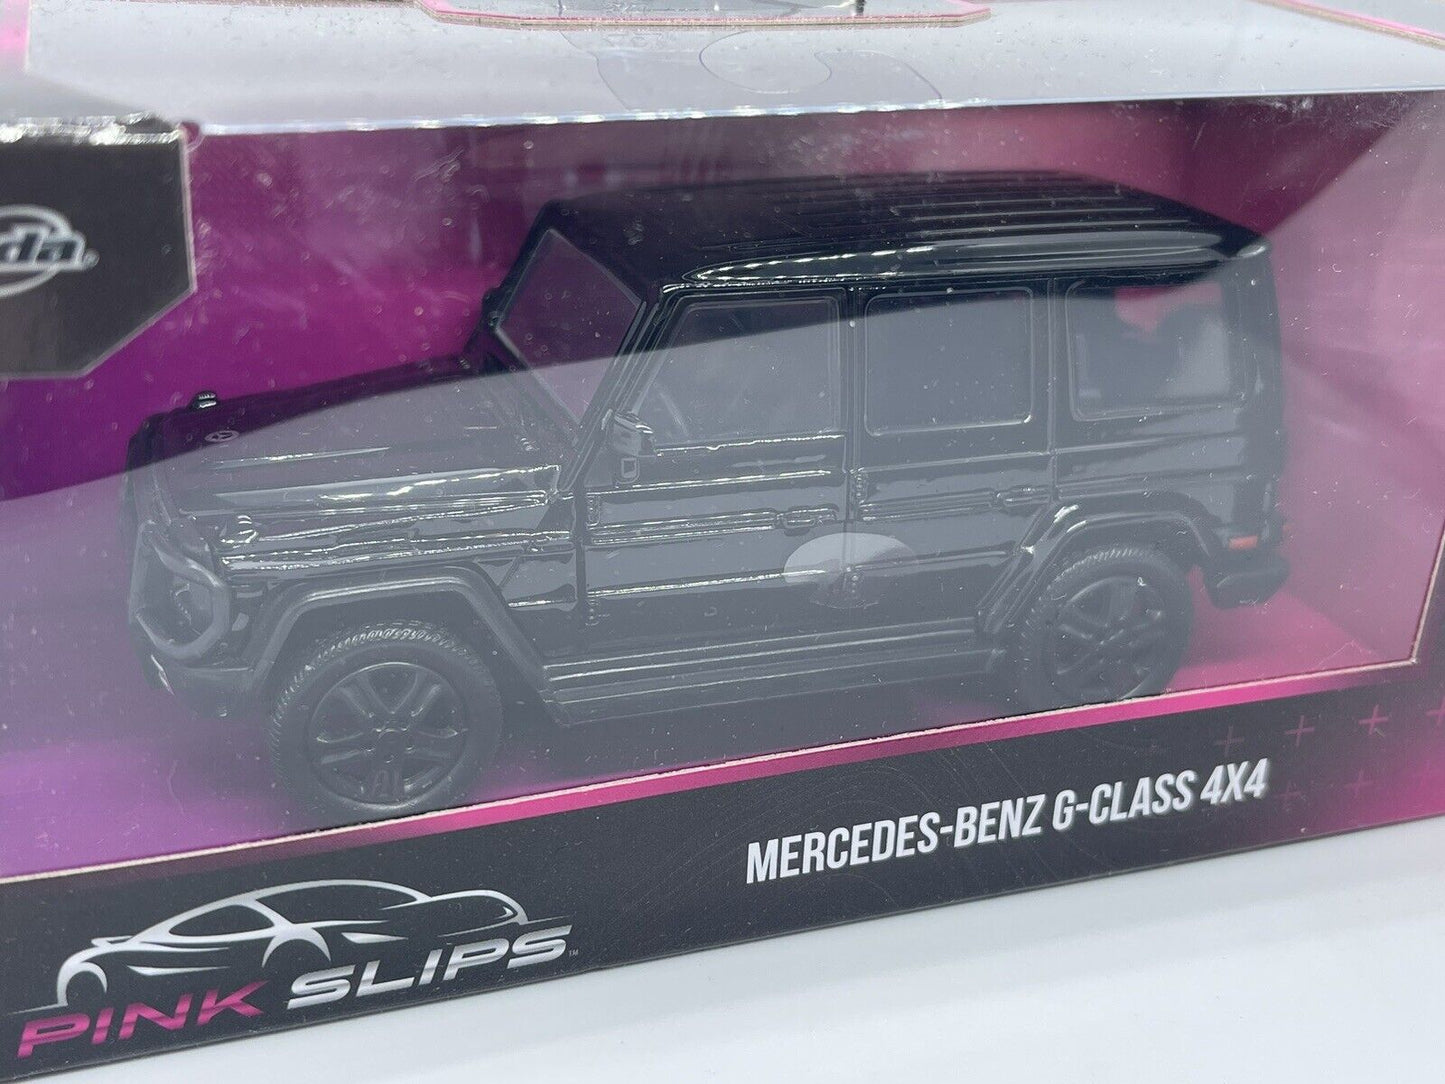 Jada - Mercedes-Benz G-Class 4x4 Black - Pink Slips - 1:32